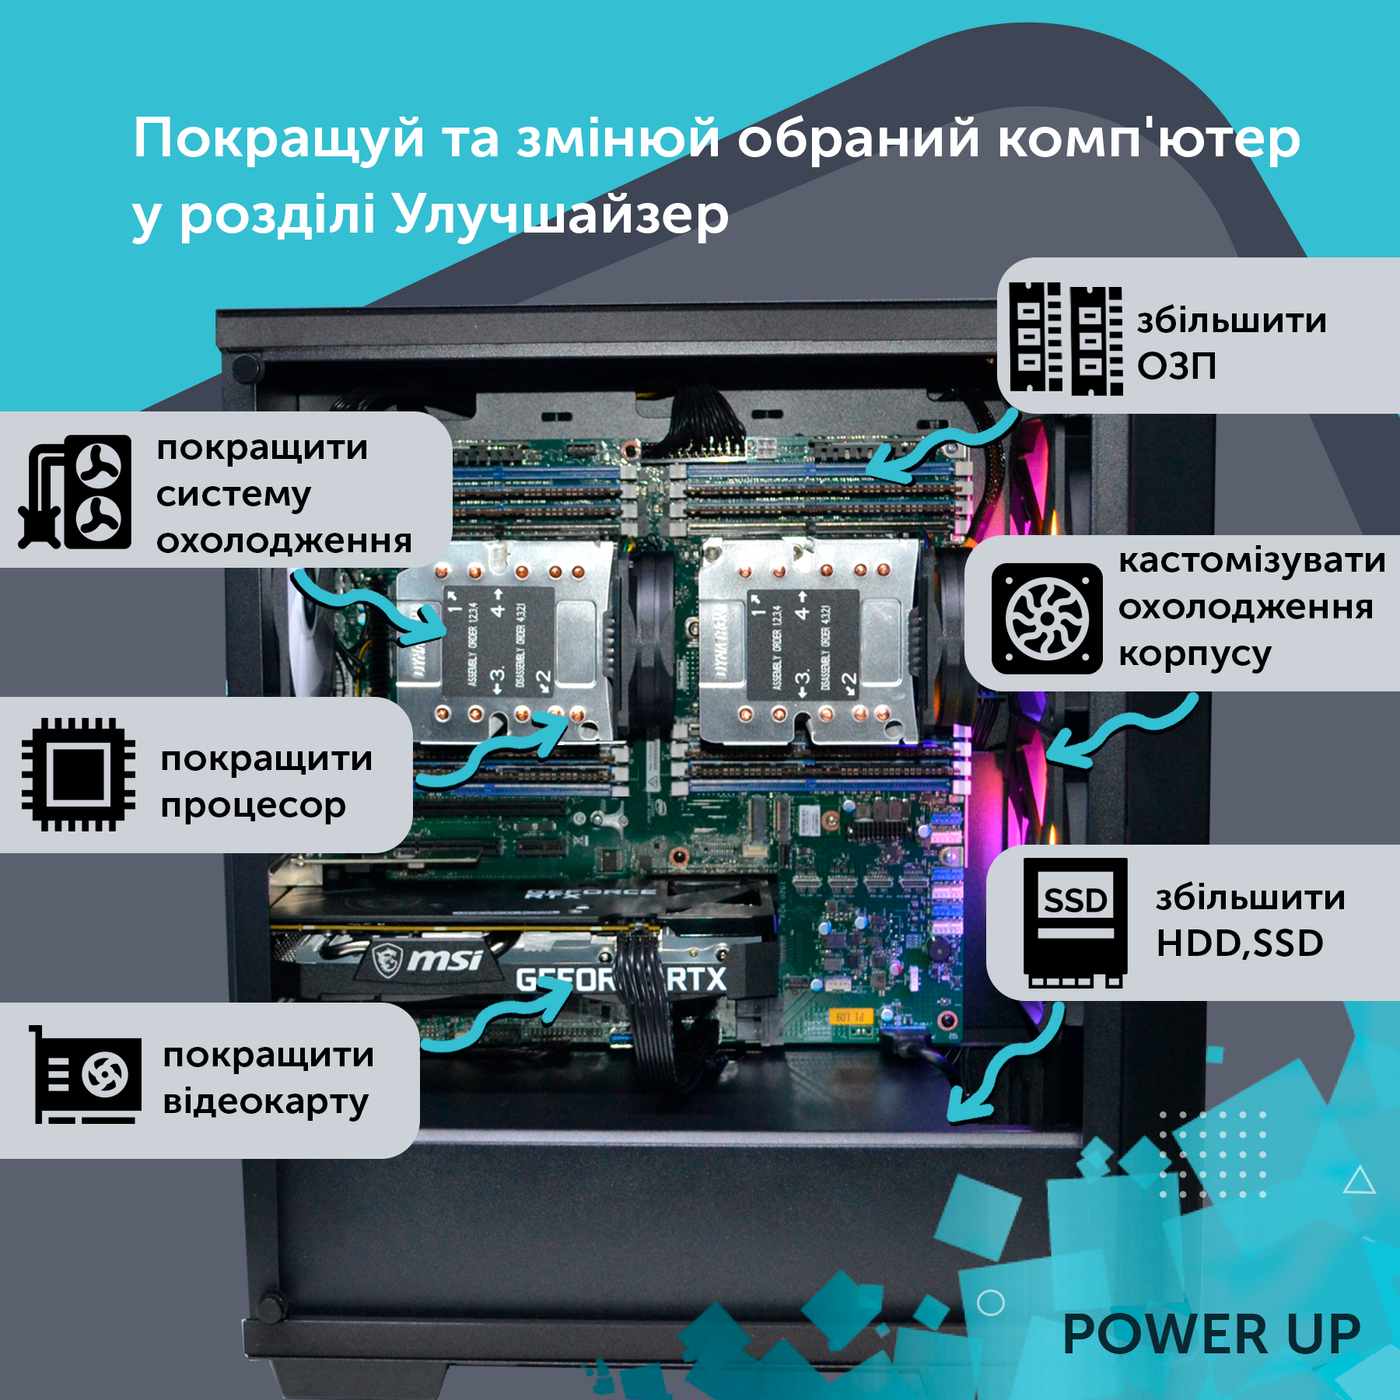 Рабочая станция PowerUp Desktop #46 Core i9 10900K/32 GB/HDD 1 TB/SSD 512GB/GeForce RTX 3070 8GB